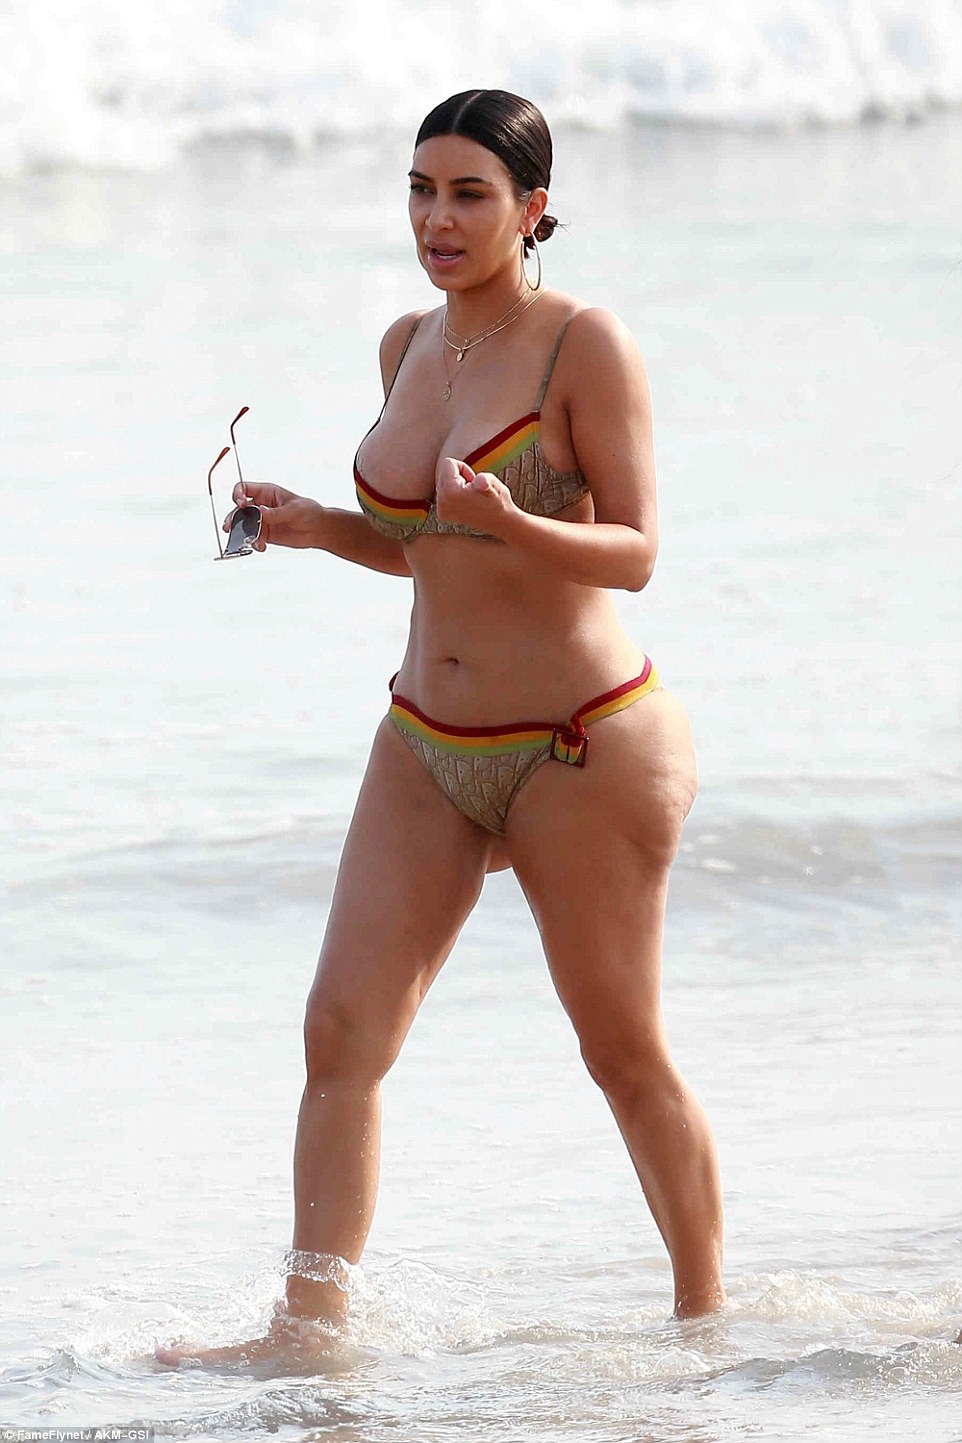 Вот пляжные фото 36-летней Ким Кардашьян! Ее формы поражают! 